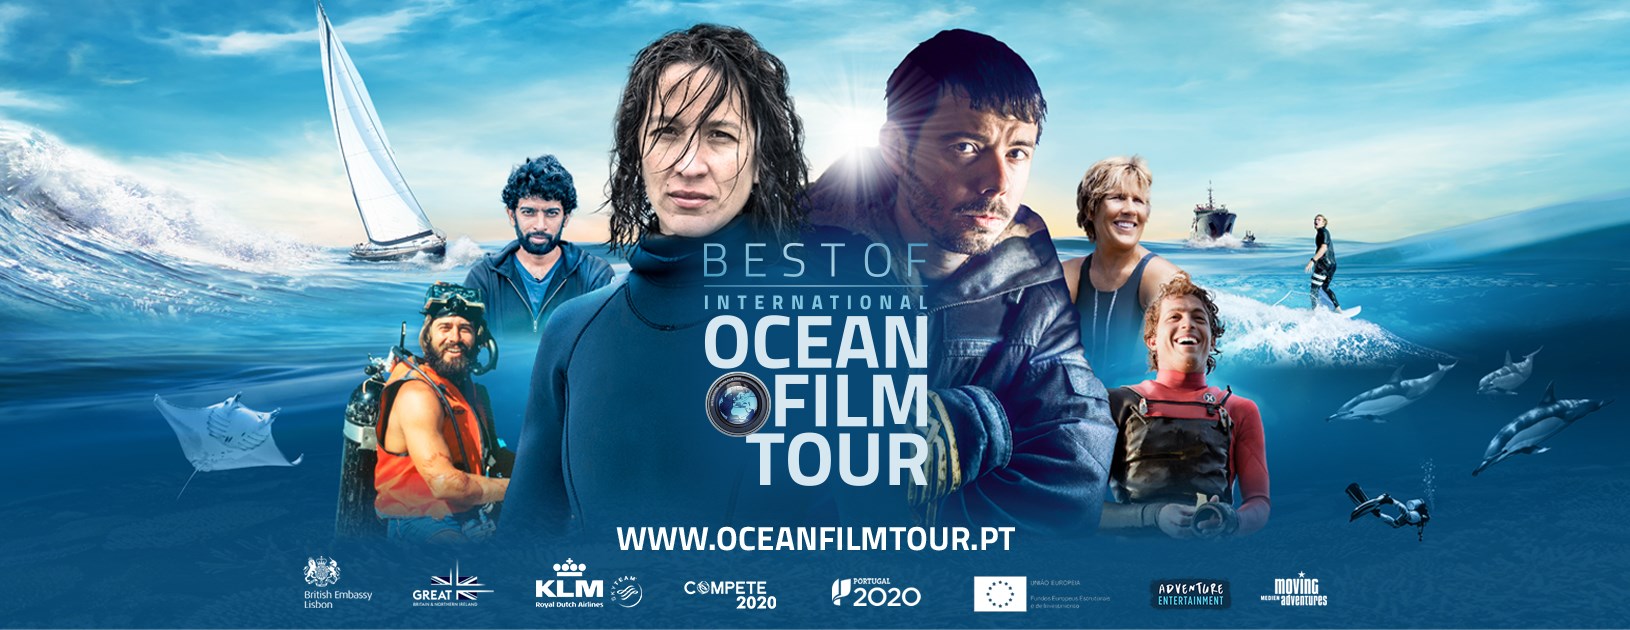 International Ocean Film Tour Best of - Portimão